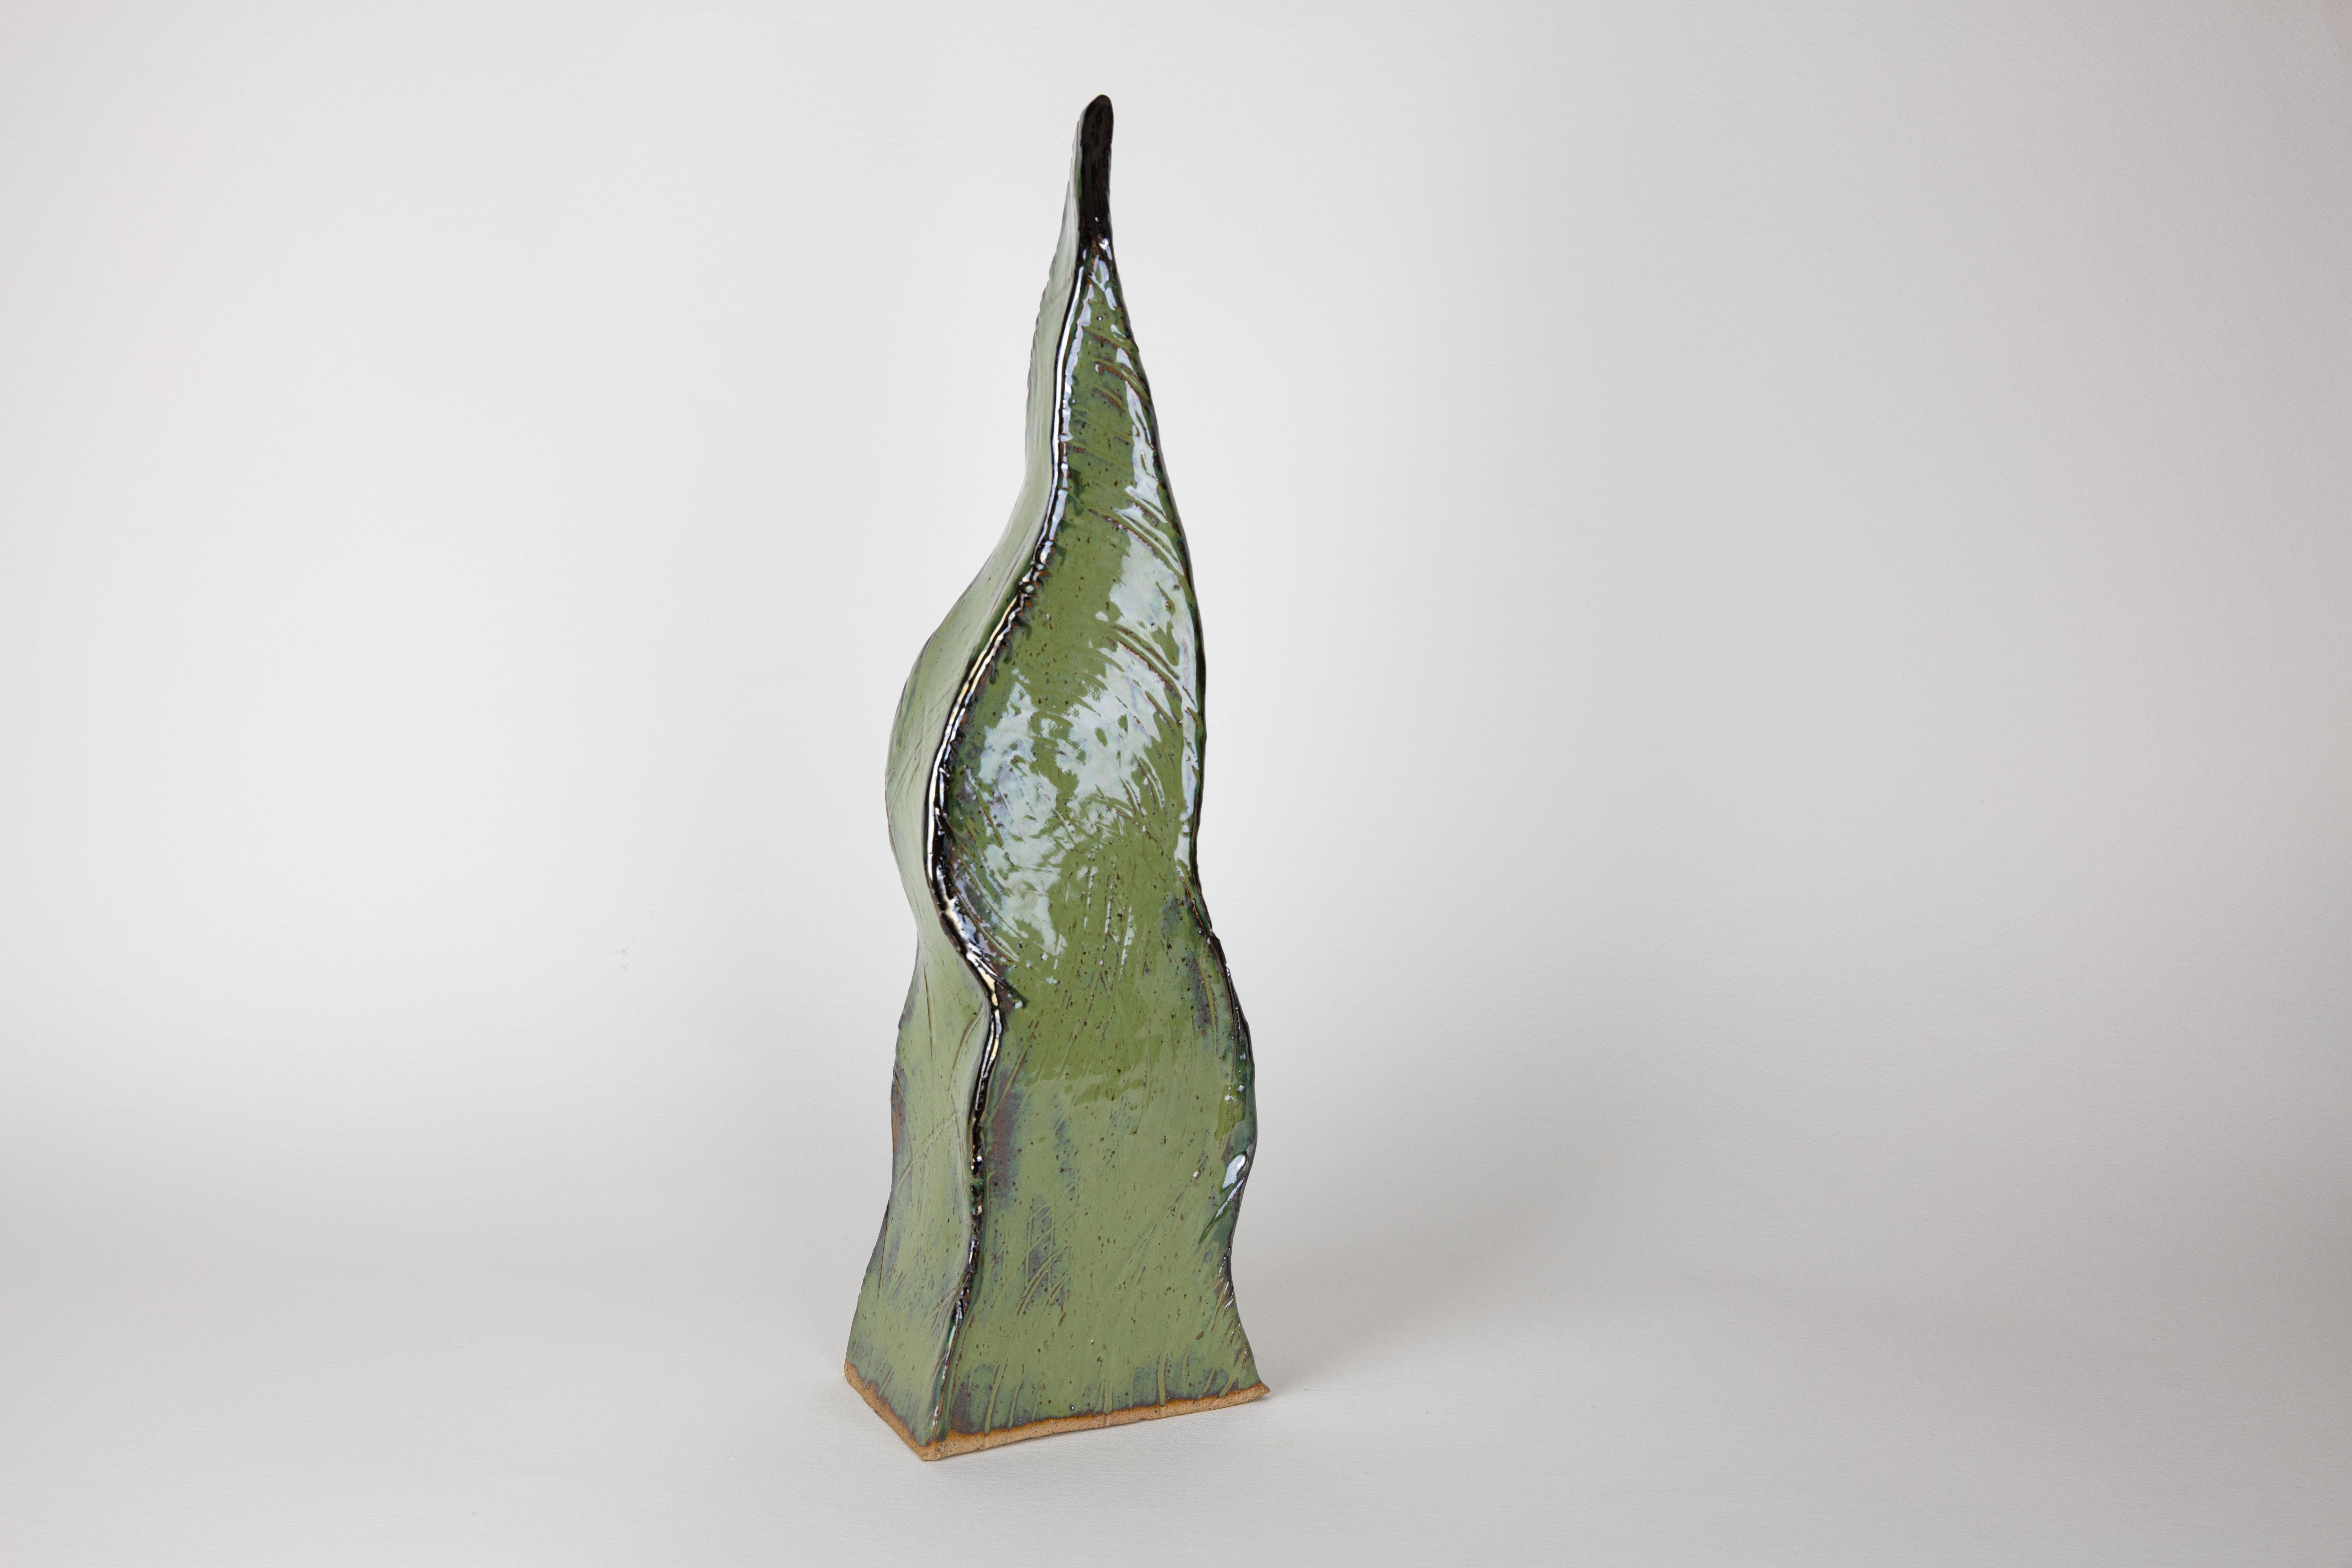 Shoot 4, Abstract ceramic sculpture, green - Sculpture by Rachelle Krieger